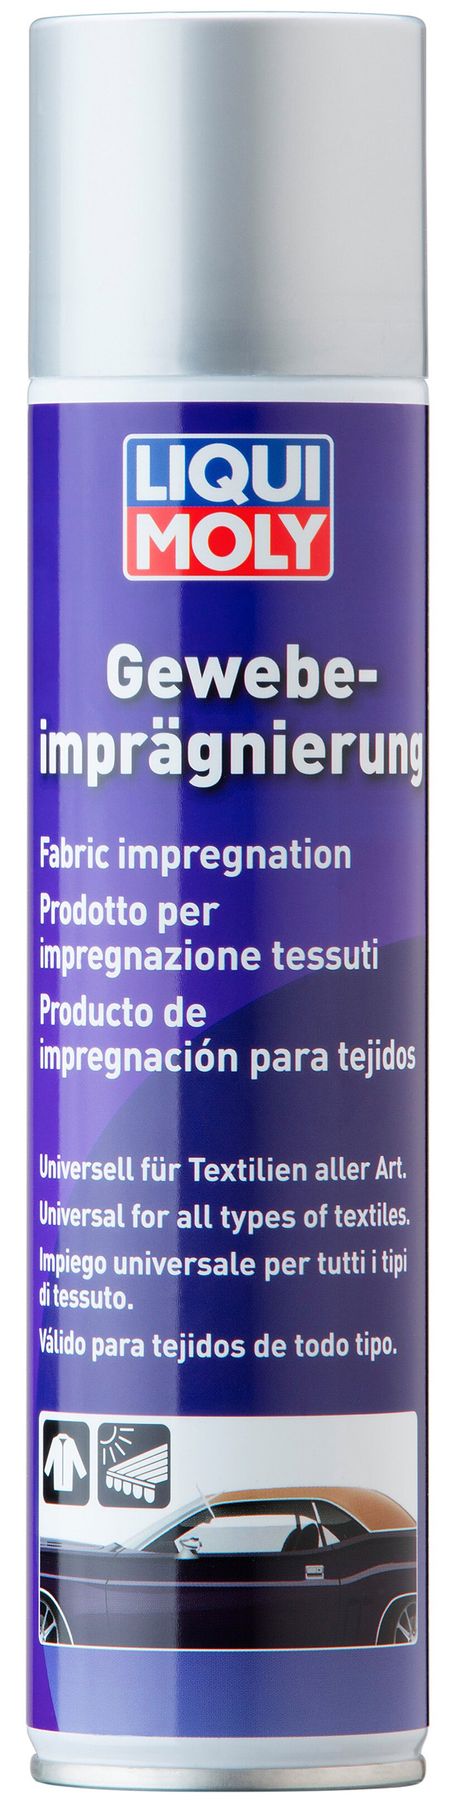 Liqui Moly Gewebe-Impragnierung средство для пропитки тентов, 0.4л - LIQUI  MOLY, Официальный интернет-магазин